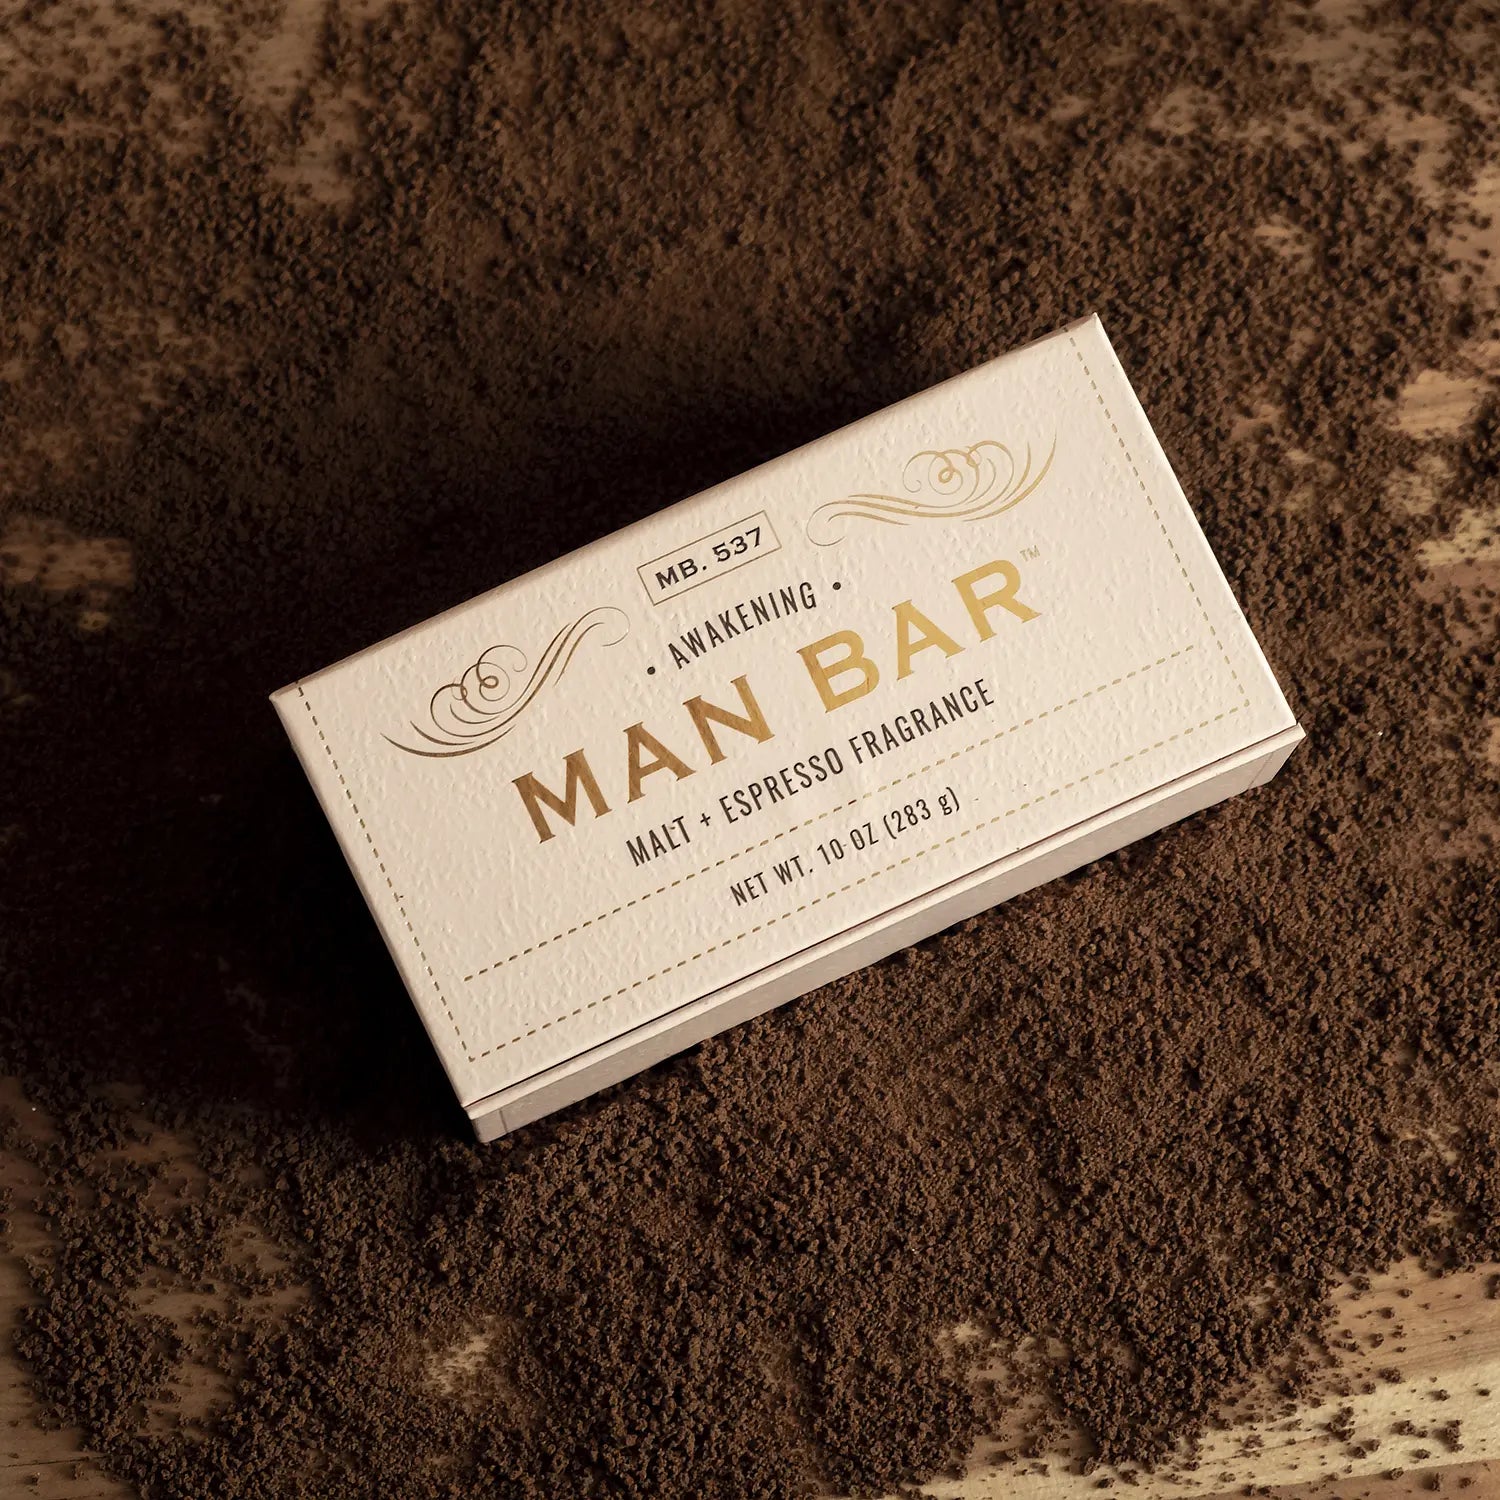 MAN BAR® Soap